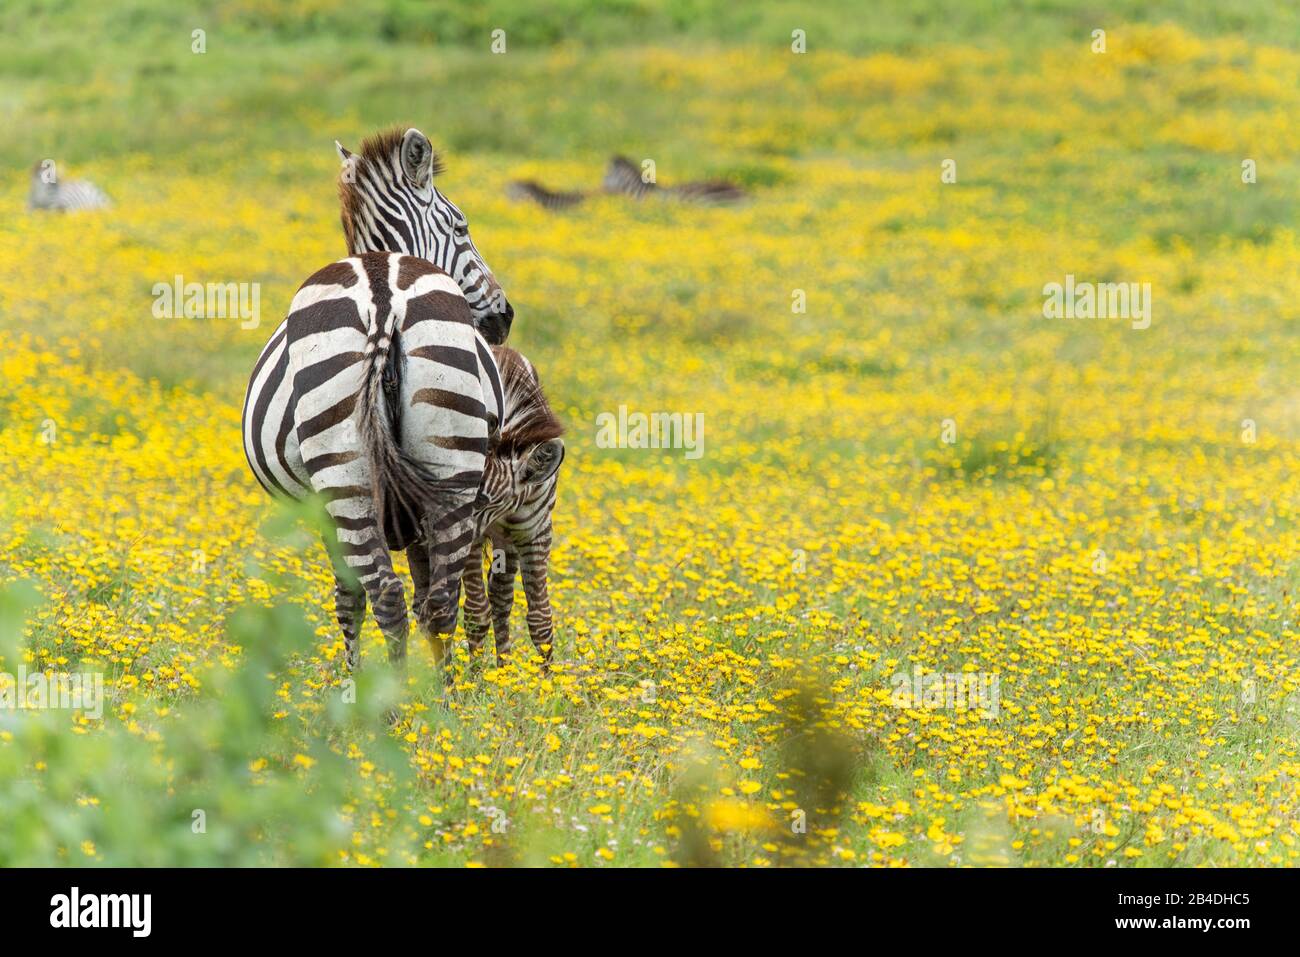 Tanzania, Northern Tanzania, Serengeti National Park, Ngorongoro Crater, Tarangire, Arusha and Lake Manyara, zebra among yellow flowers, Equus quagga Stock Photo